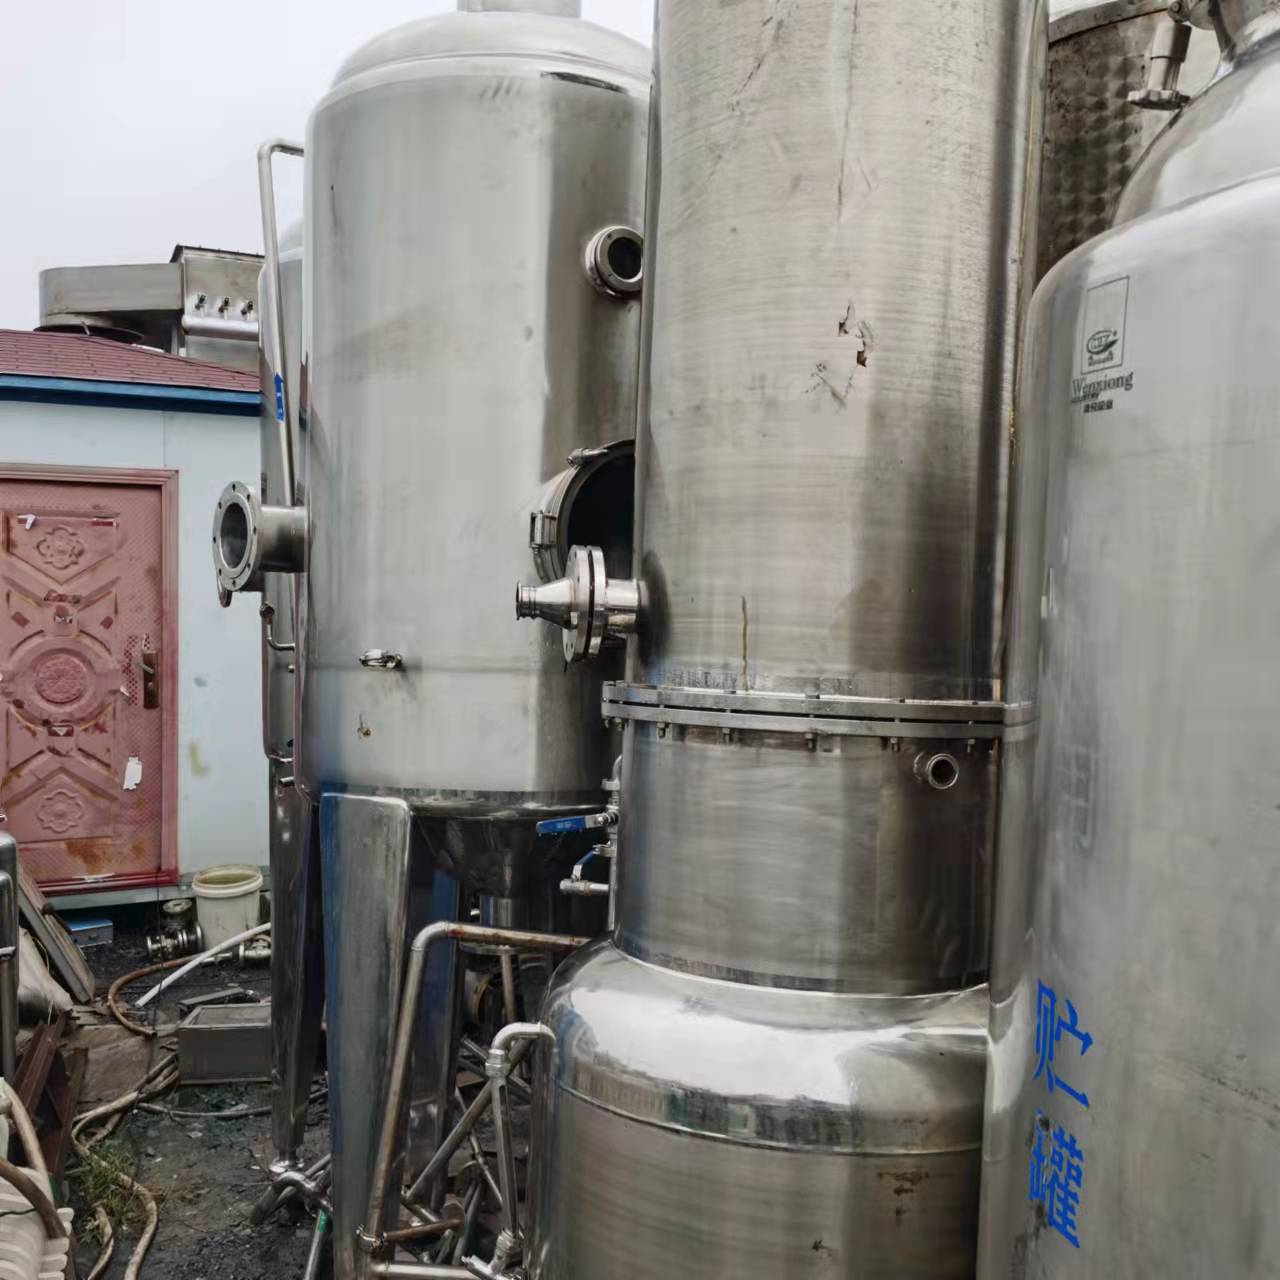 蒸发器 二手蒸发器 二手强制循环蒸发器  二手污水蒸发器 嘉运二手设备 来电咨询